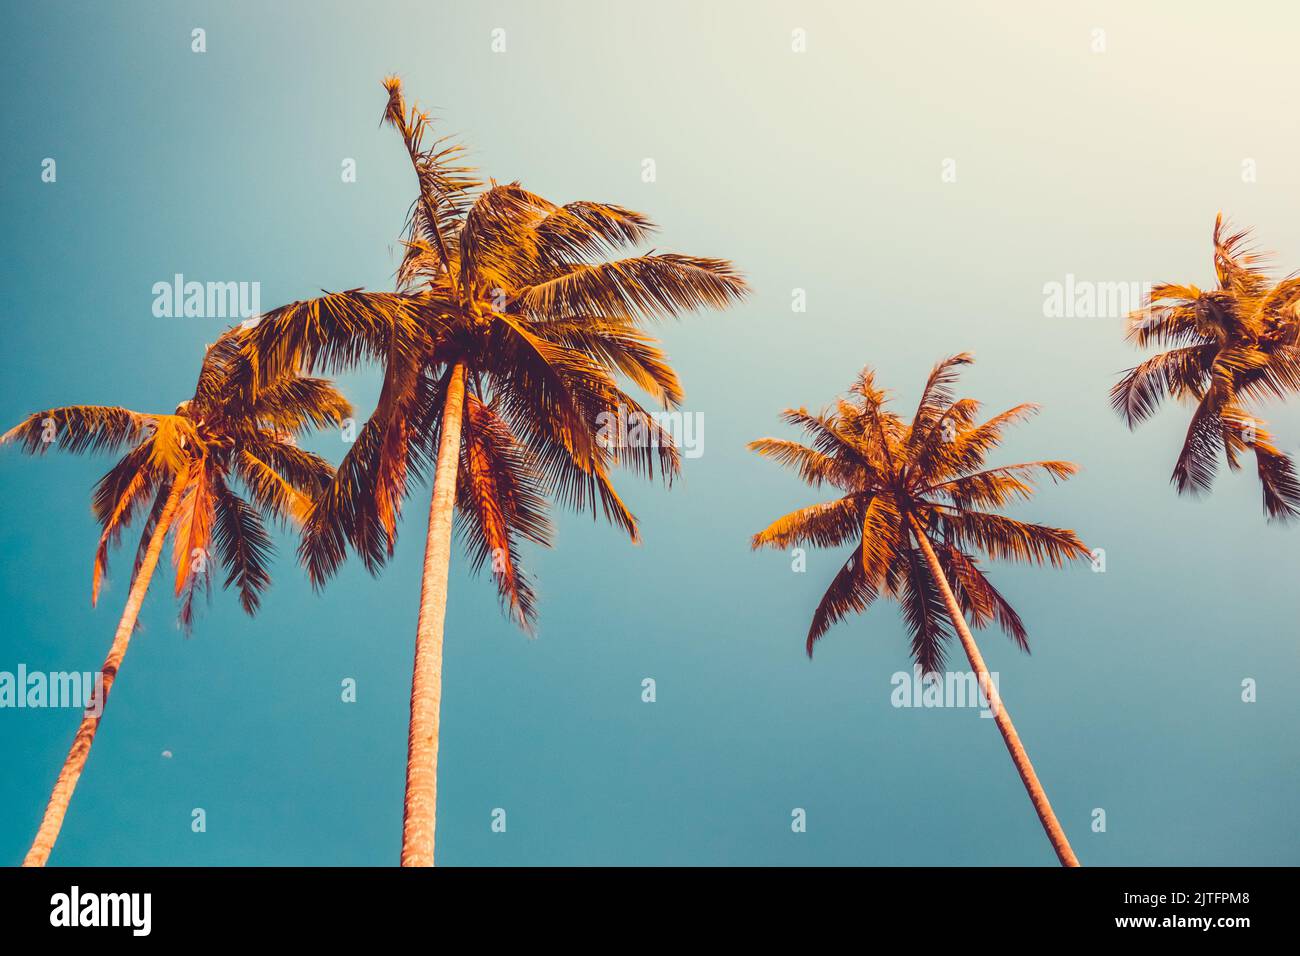 Orangefarbene Kokospalmen gegen den blauen Himmel bei Sonnenuntergang. Tropisches Paradies im Naturdesign. Vintage-Tonfilter. Urlaubskonzept. Hintergrund des Banners Stockfoto